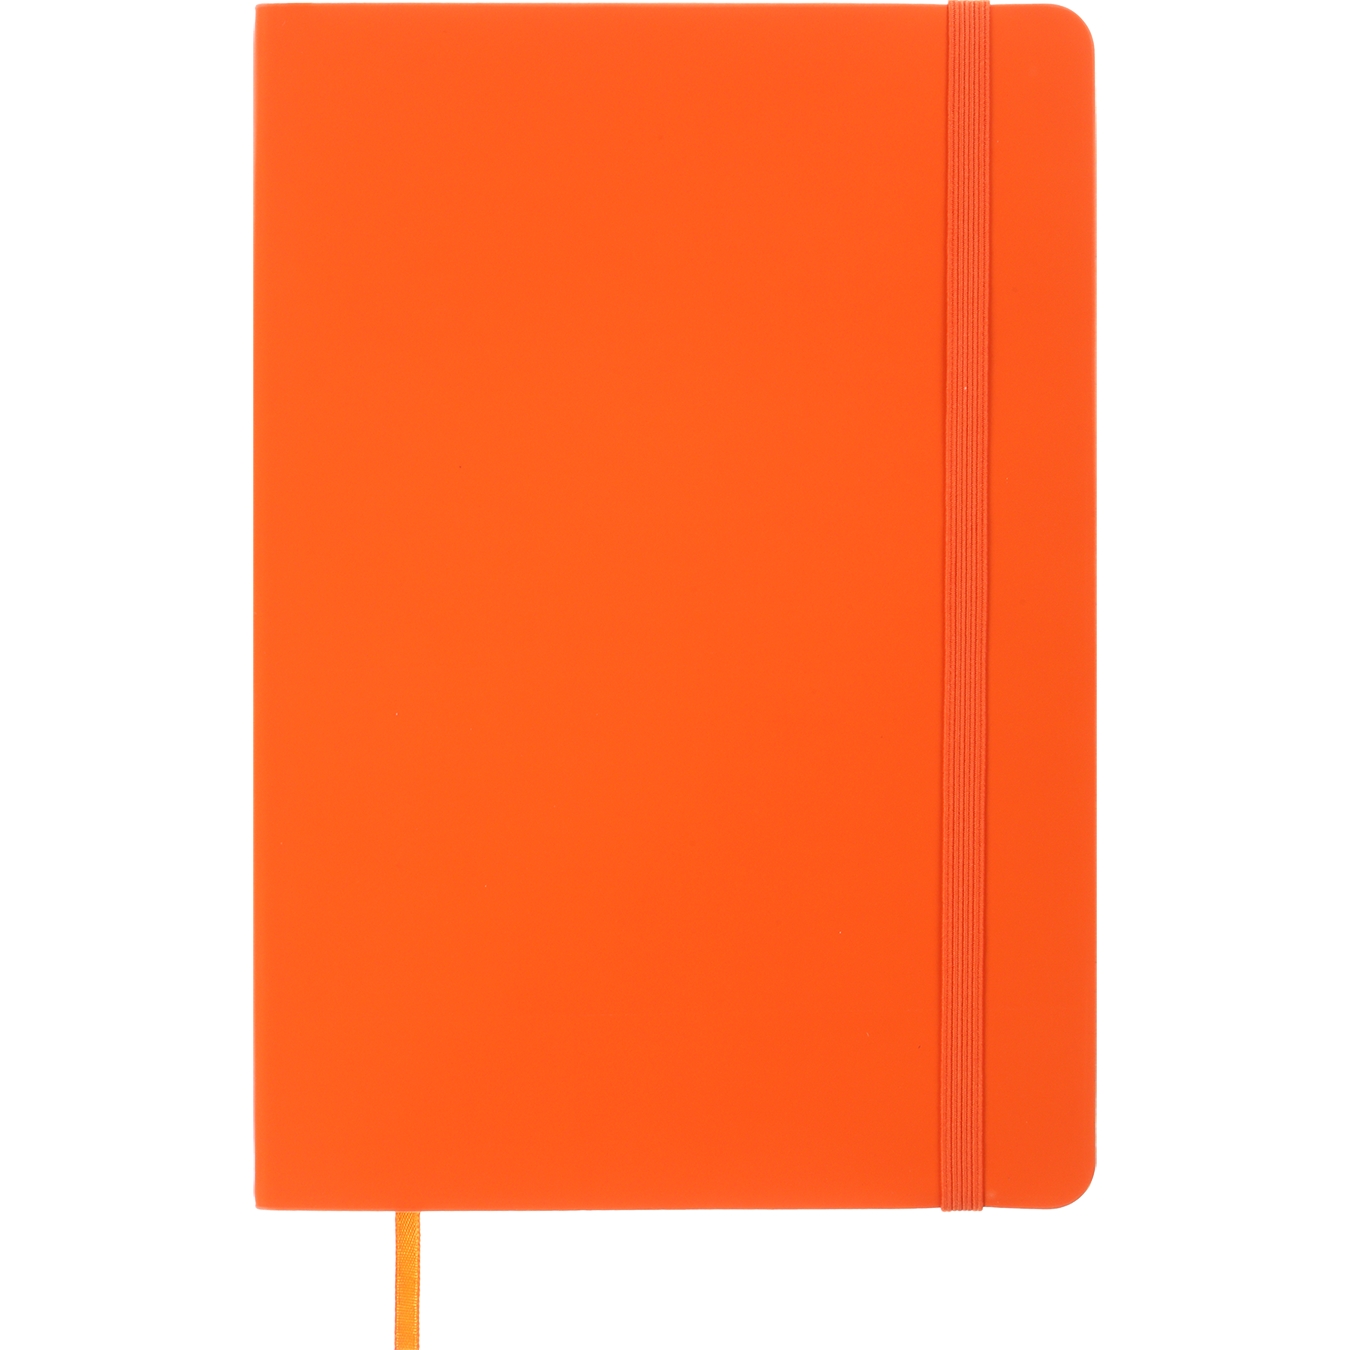 Блокнот деловой Buromax Logo2U Touch Me А5 96 л. в клеточку обложка искусственная кожа оранжевый (BM.295102-11) - фото 1